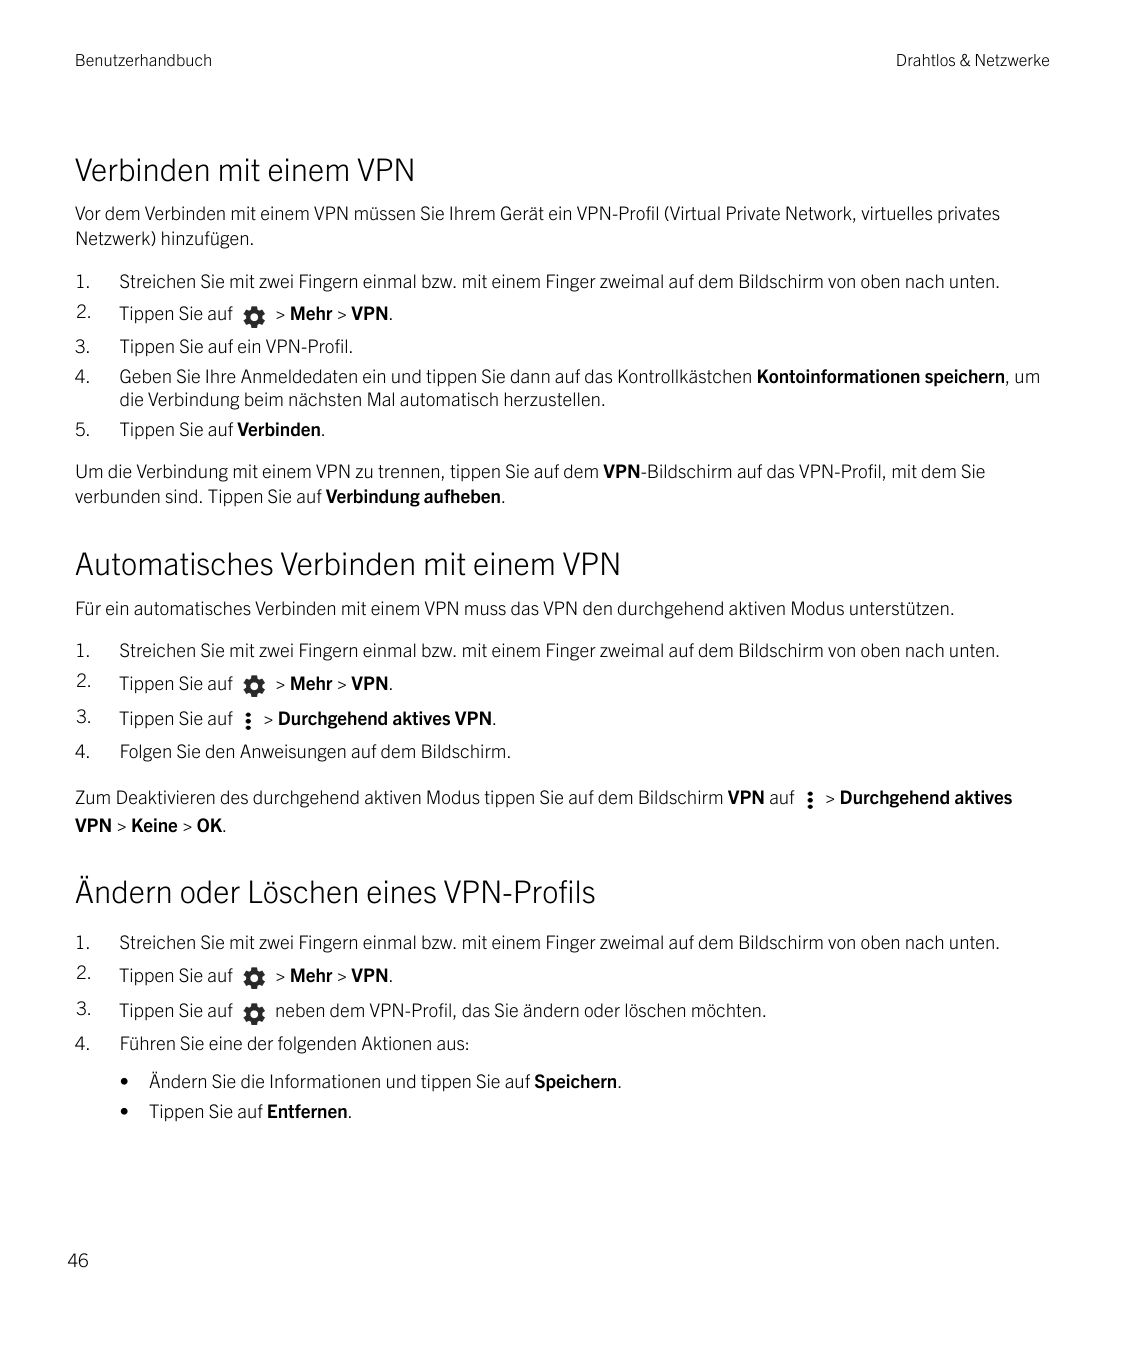 BenutzerhandbuchDrahtlos & NetzwerkeVerbinden mit einem VPNVor dem Verbinden mit einem VPN müssen Sie Ihrem Gerät ein VPN-Profil